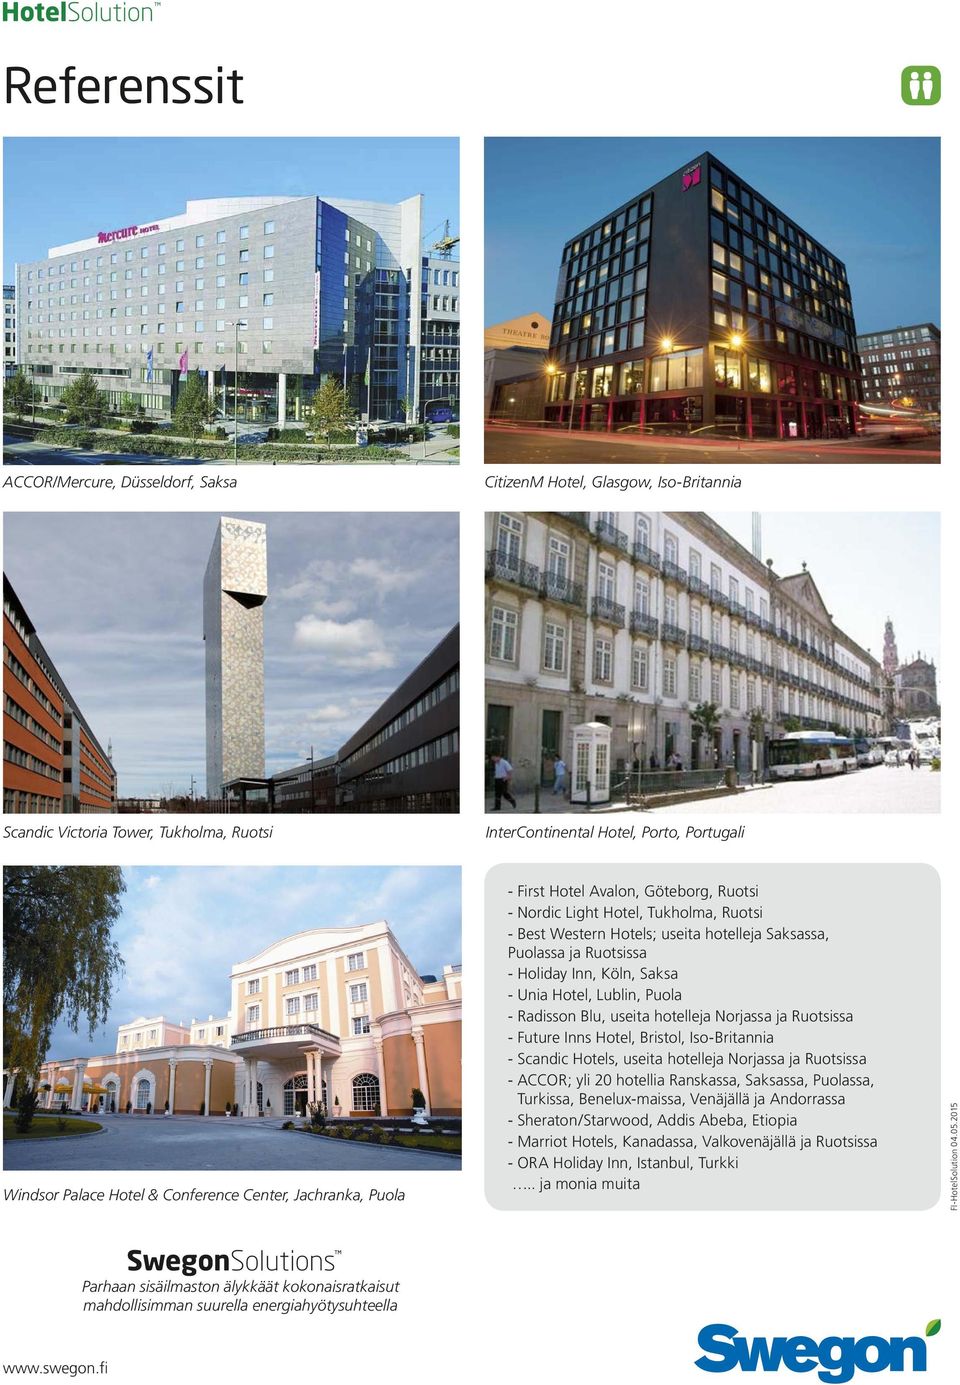 Saksa - Unia Hotel, Lublin, Puola - Radisson Blu, useita hotelleja Norjassa ja Ruotsissa - Future Inns Hotel, Bristol, Iso-Britannia - Scandic Hotels, useita hotelleja Norjassa ja Ruotsissa - ACCOR;